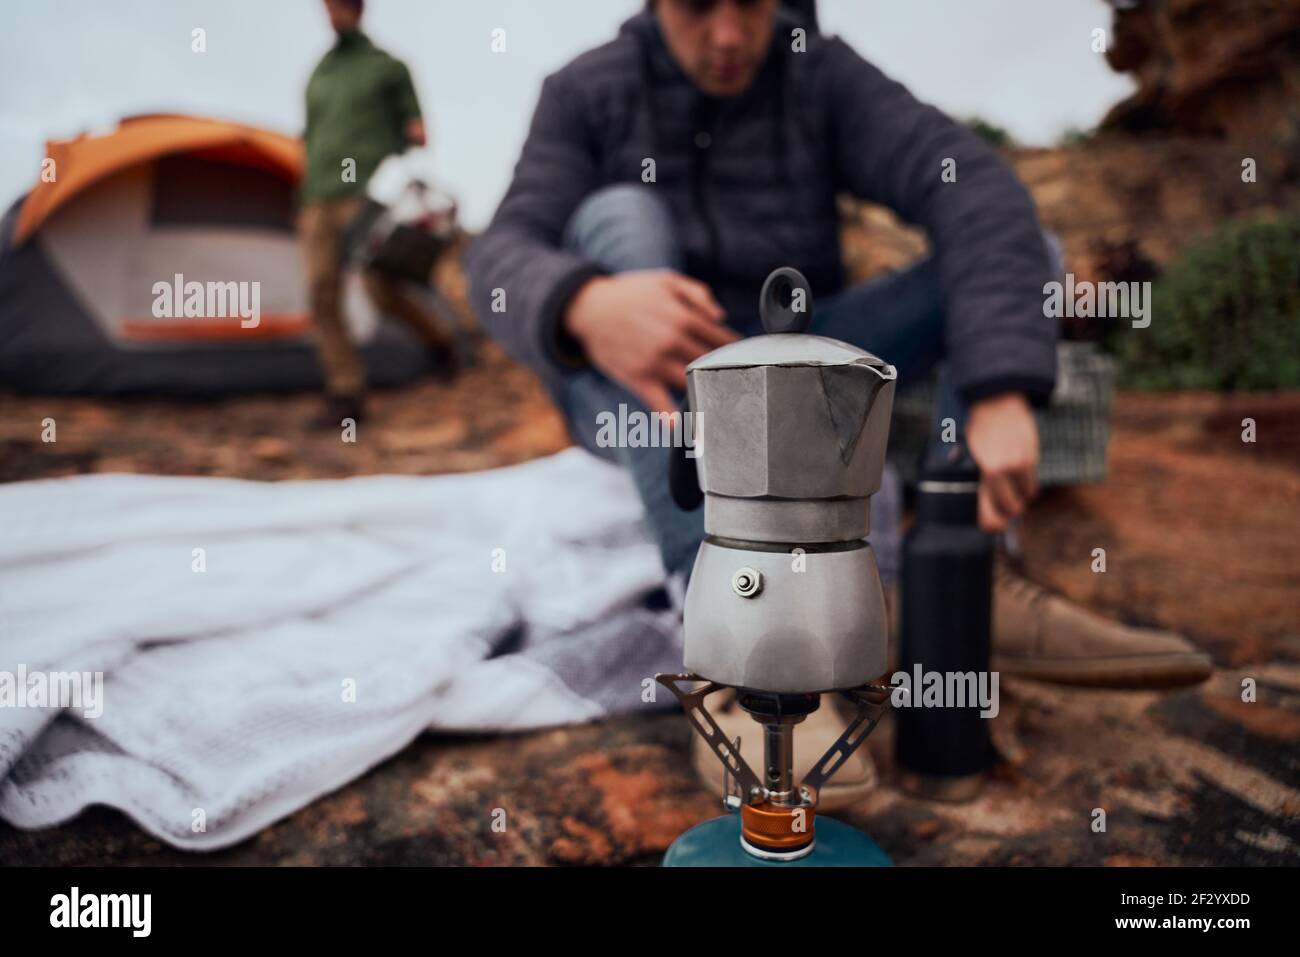 Nahaufnahme des Kessels auf dem Herd während des Campens, während der Mann sich vorbereitet Morgengetränk auf der Decke außerhalb des Zeltes sitzend Stockfoto